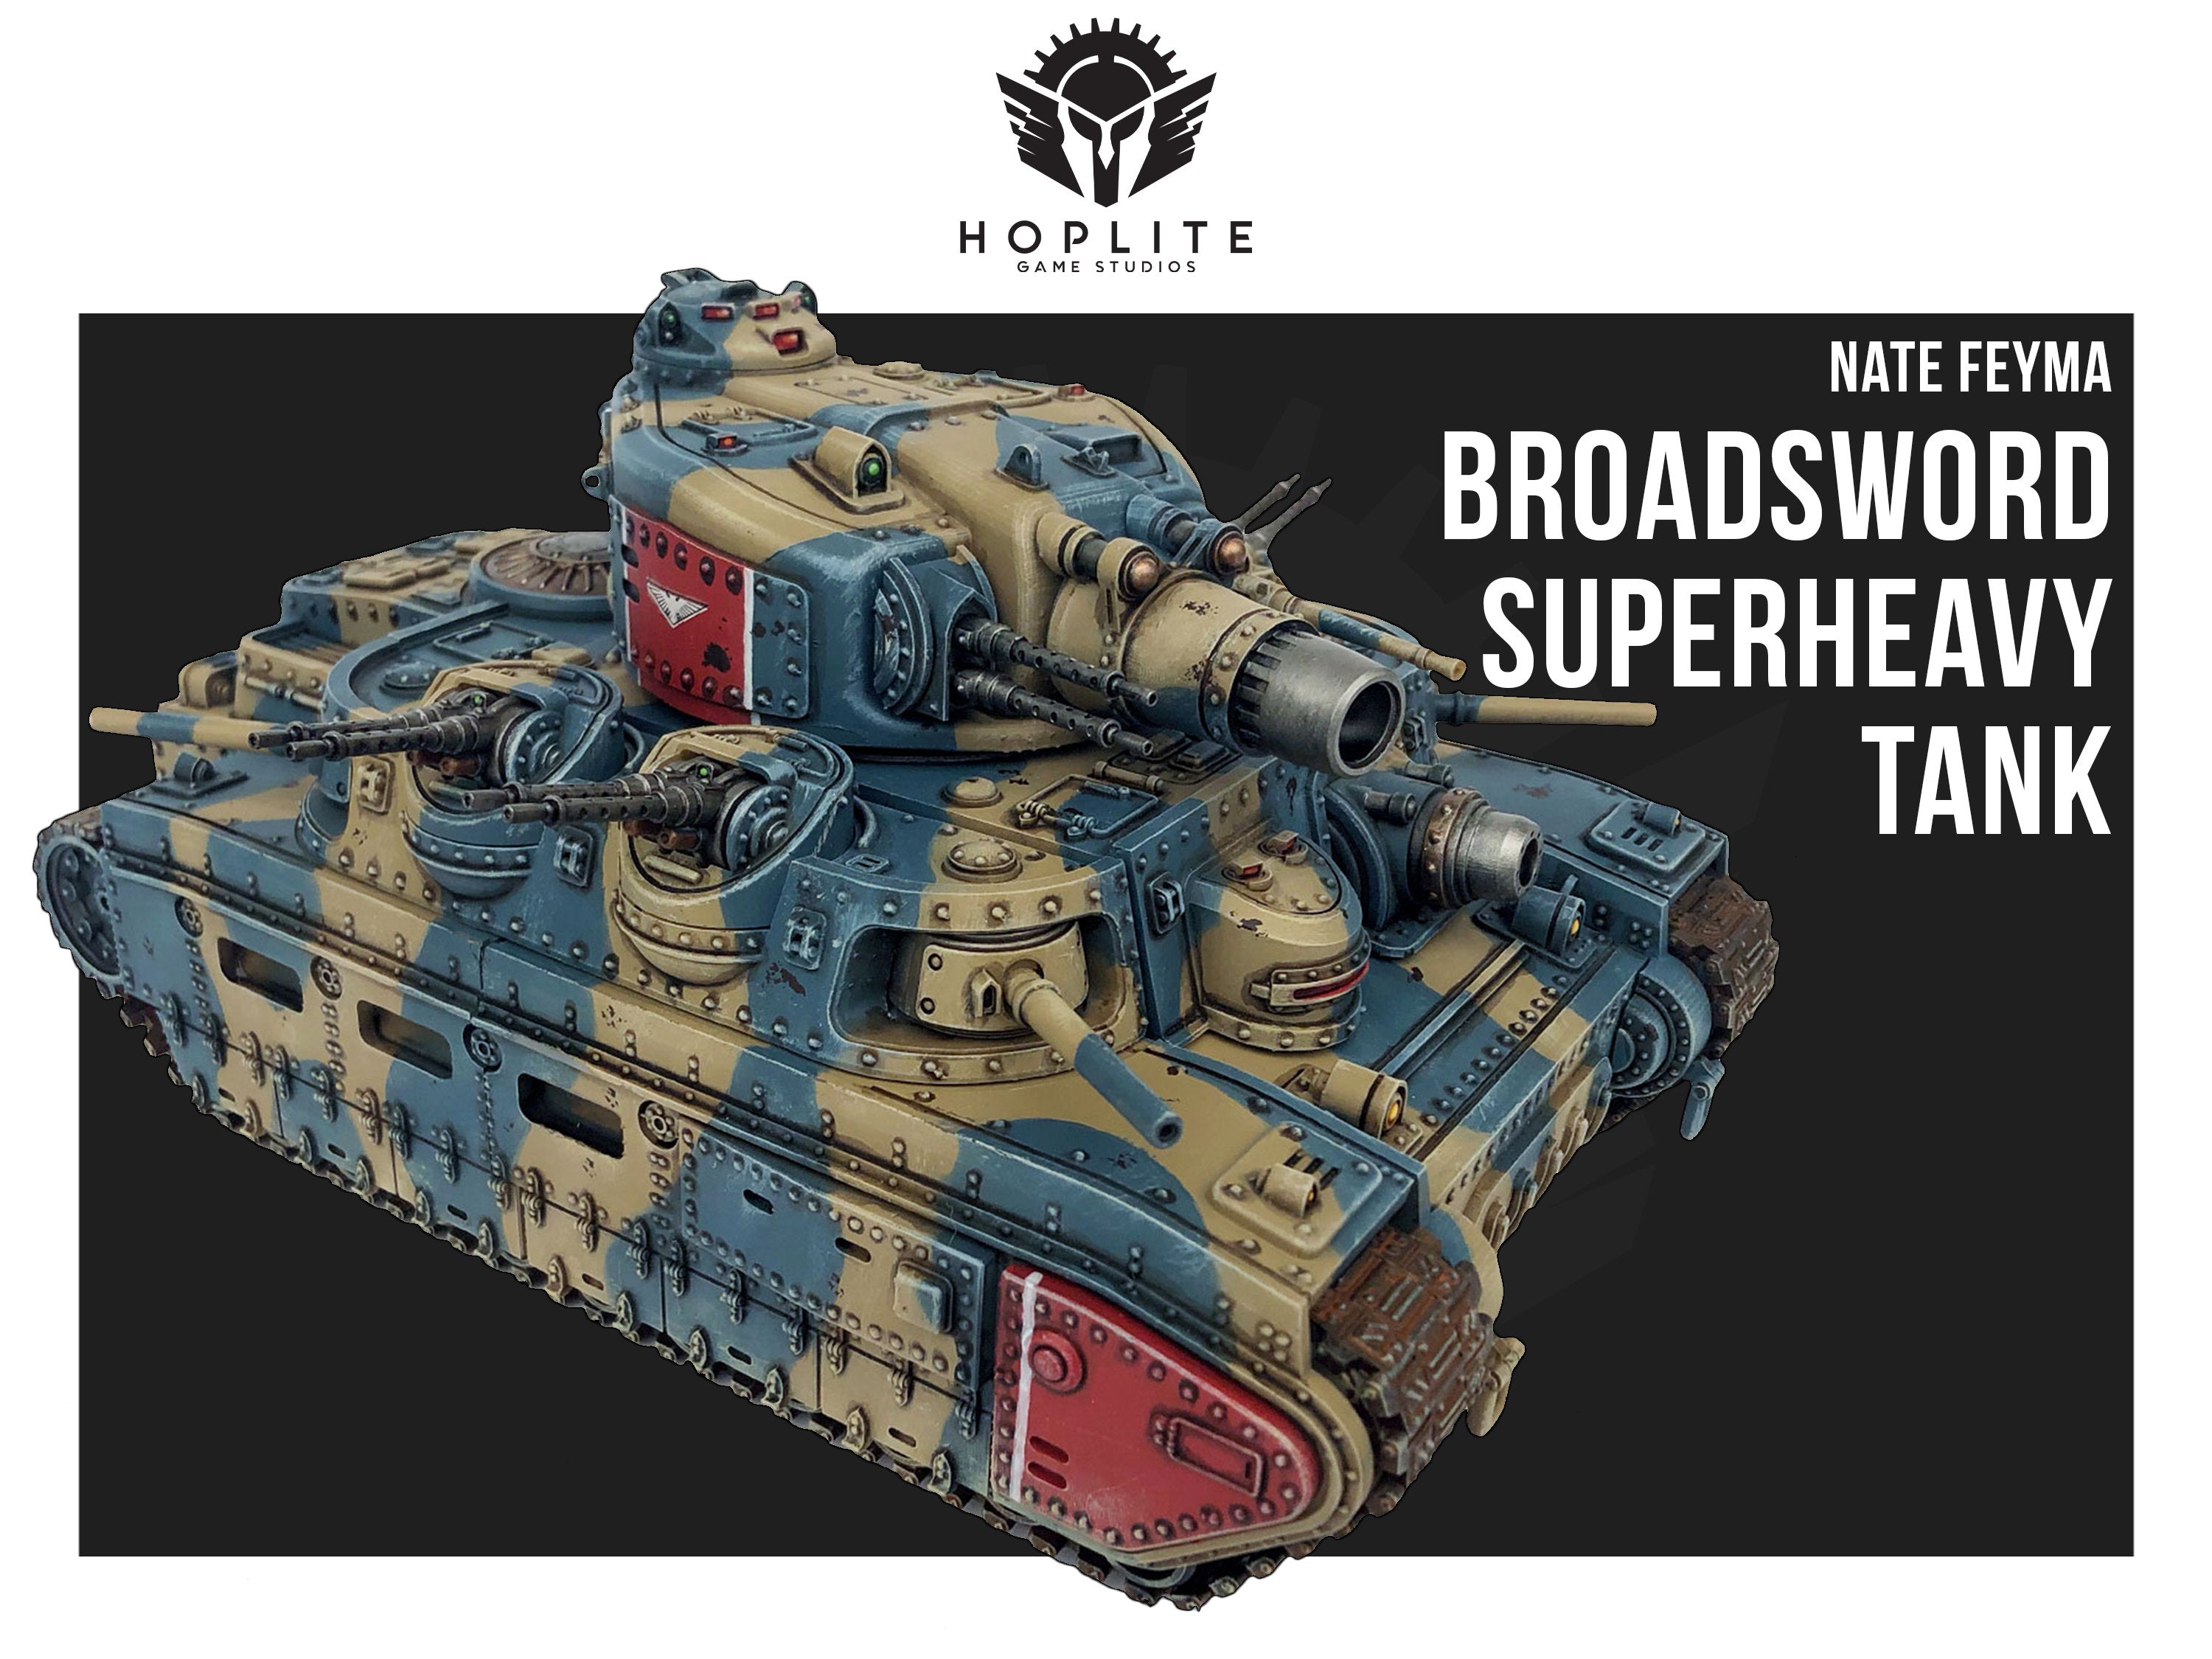 El tanque de batalla superpesado Broadsword